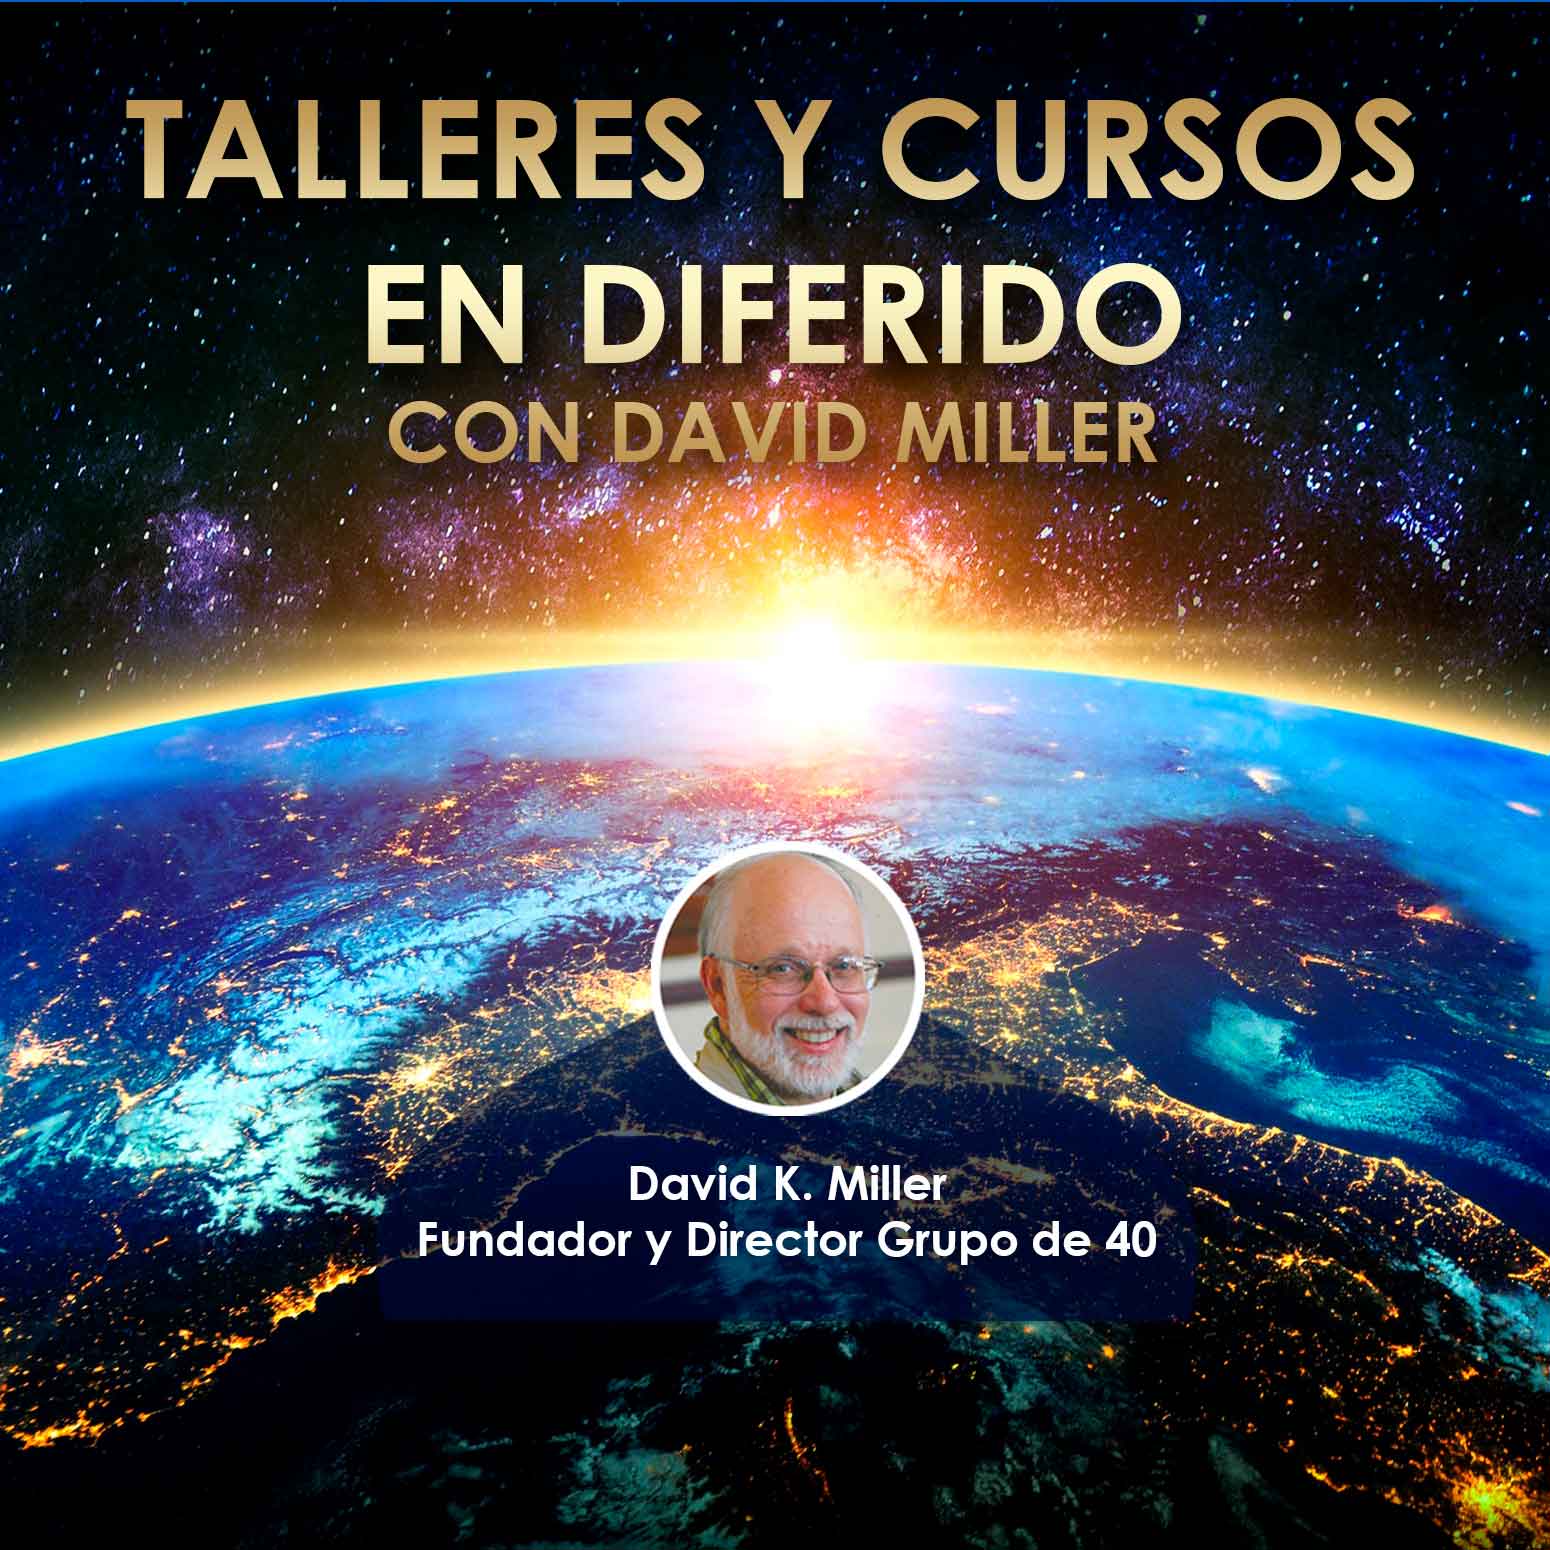 TALLERES Y CURSOS EN DIFERIDO CON DAVID MILLER